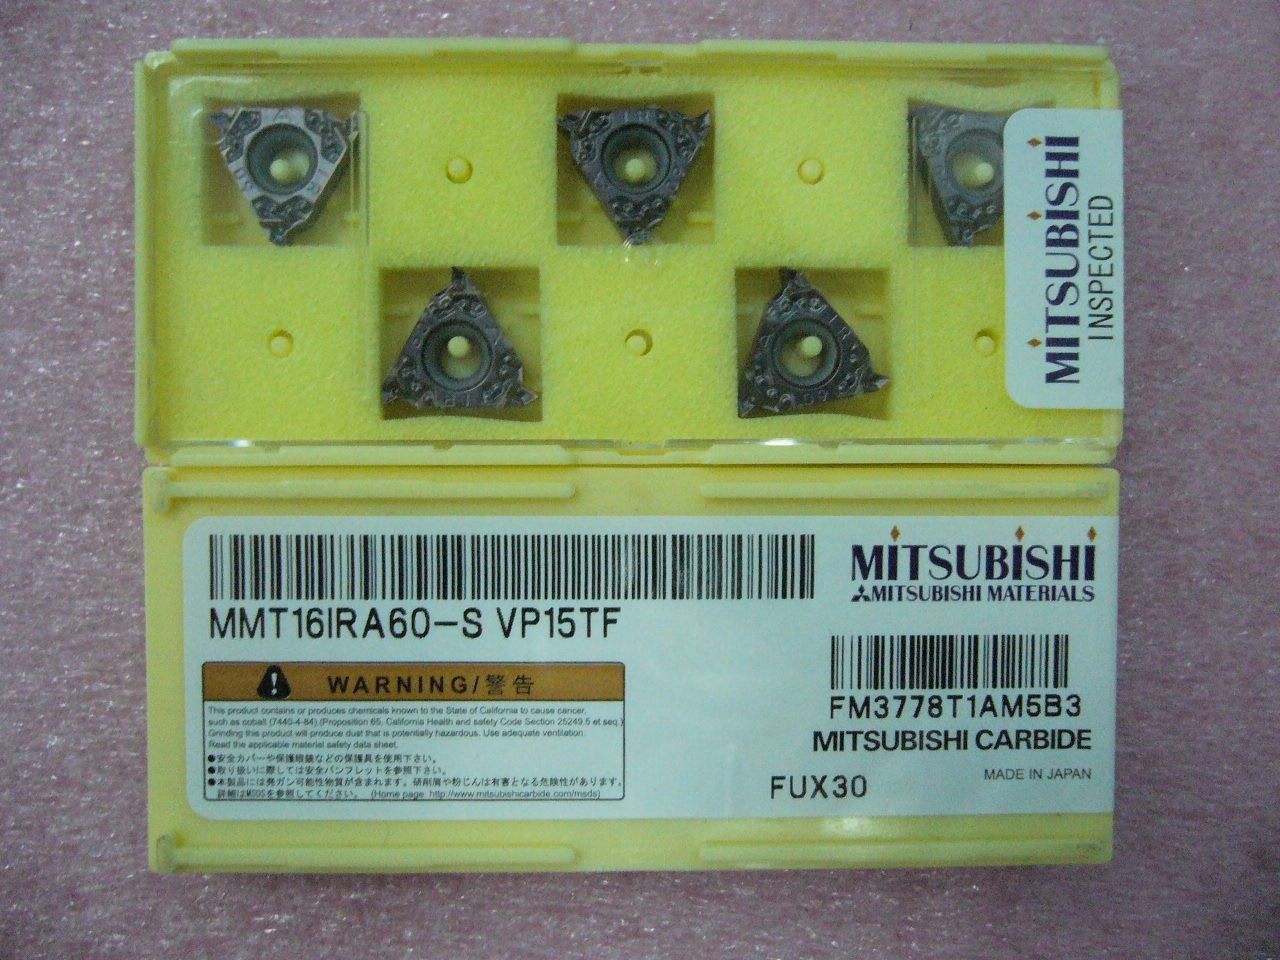 QTY 5x Mitsubishi MMT16IRA60-S VP15TF 16IR A60 Threading Inserts NEW - $43.50